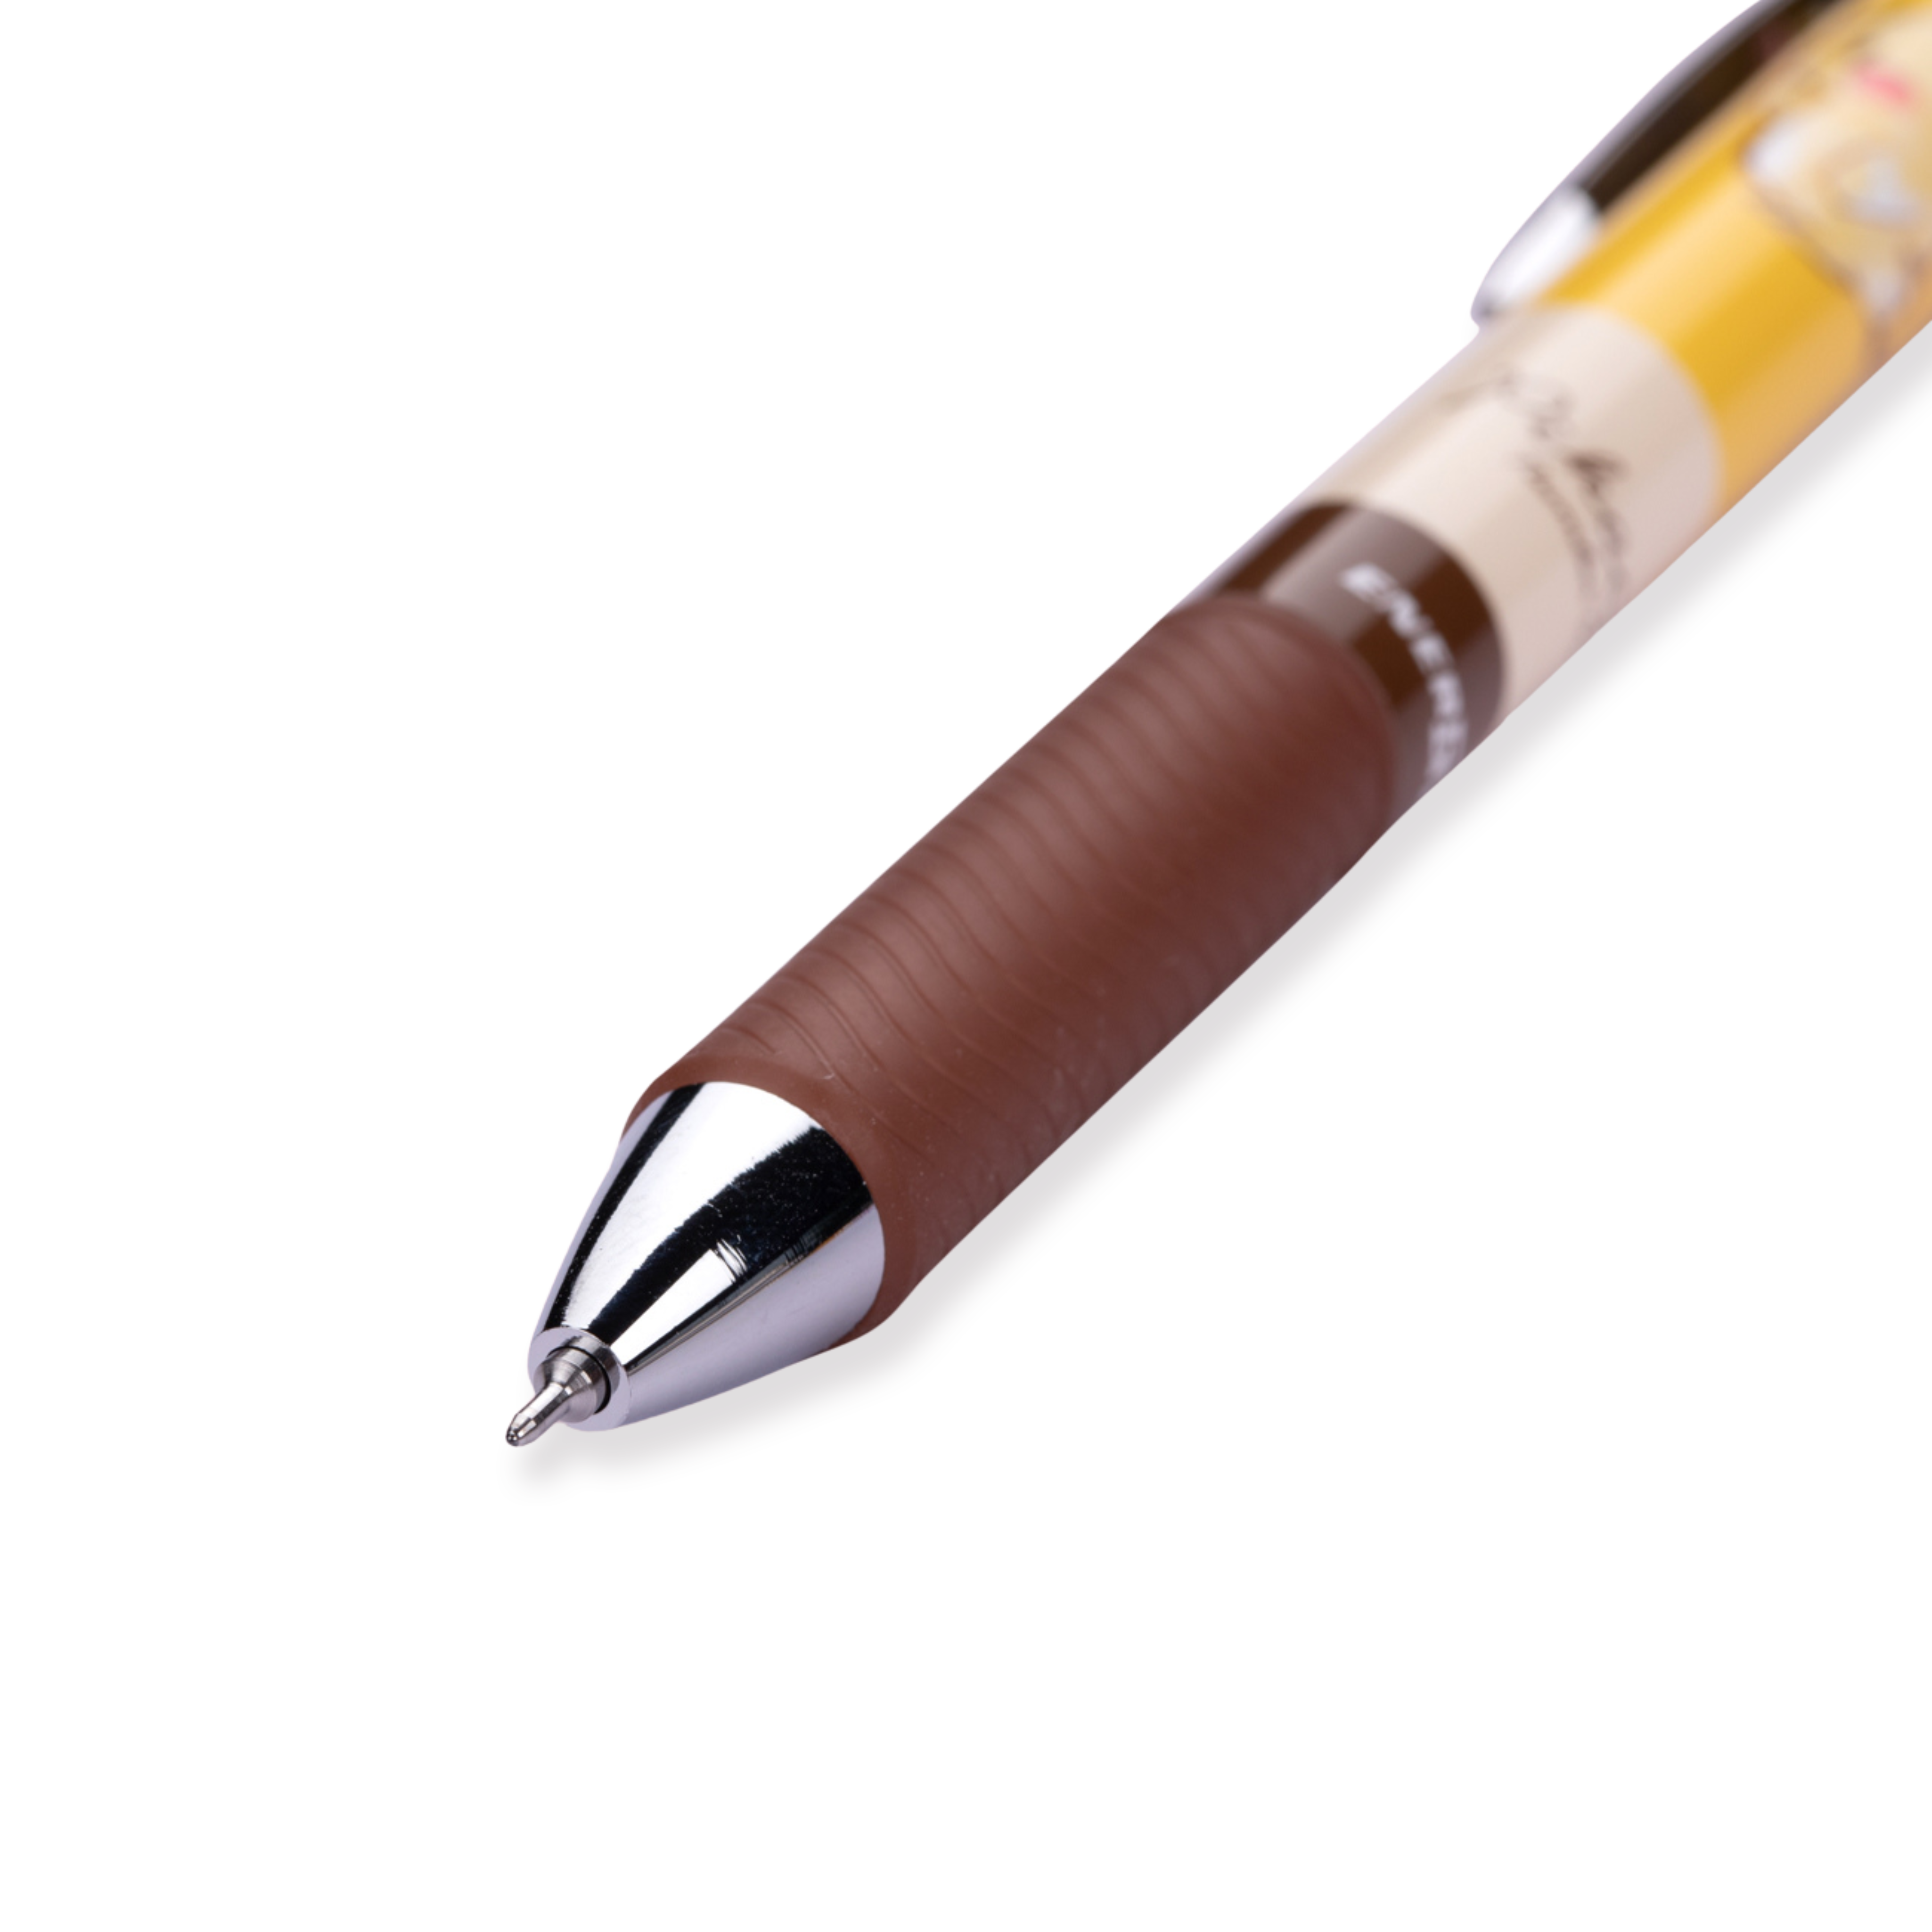 Bolígrafo de gel Pentel EnerGel Pikachu de edición limitada - 0,5 mm - Tinta negra - Agarre marrón